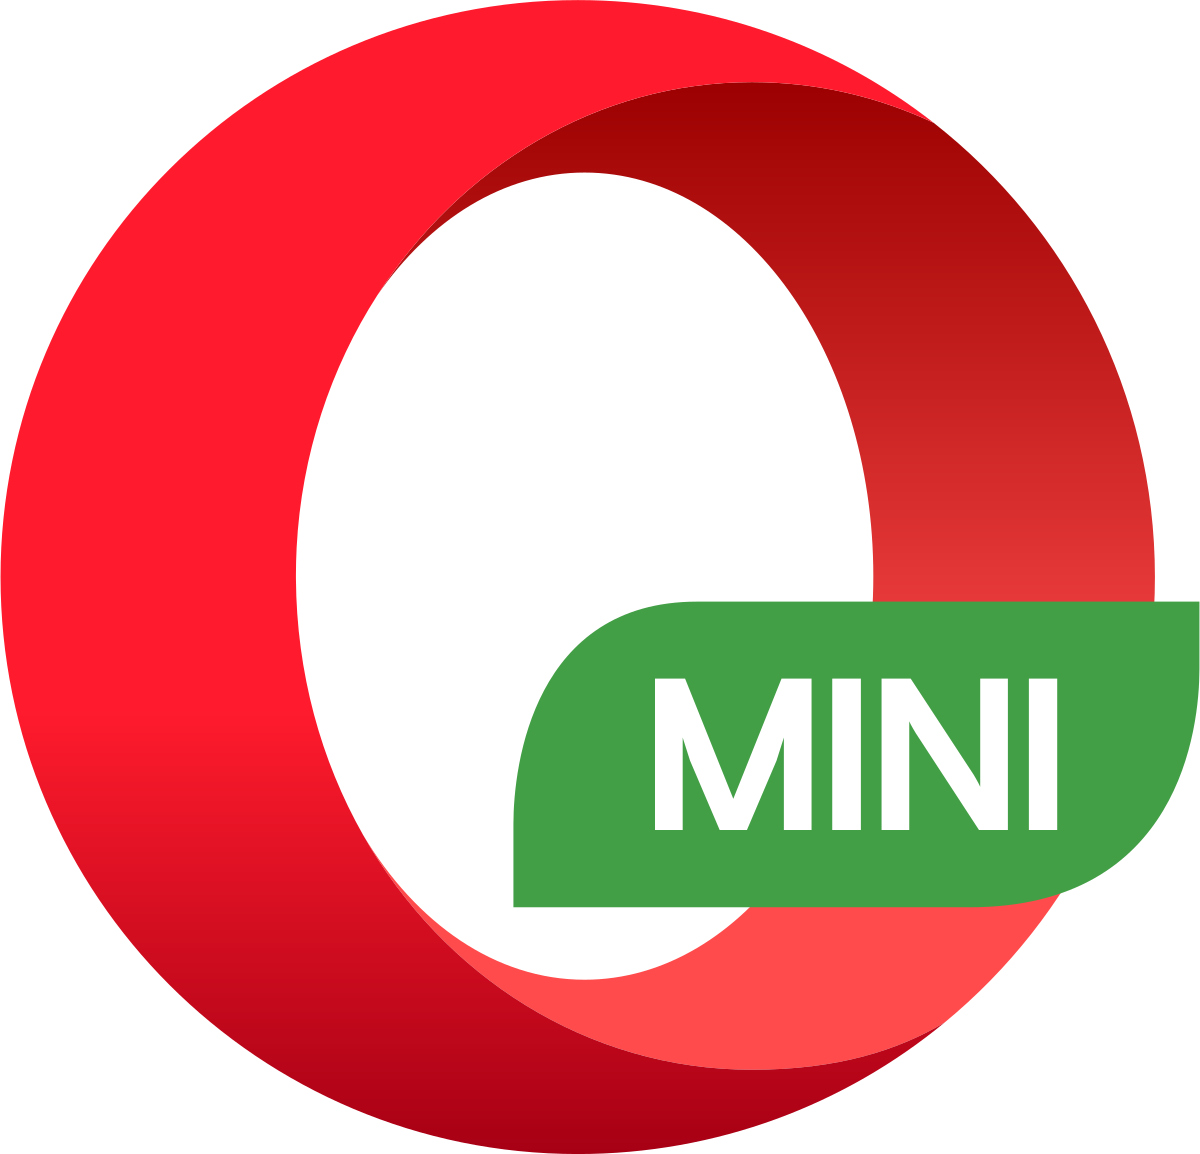 Opera Mini Image Download - KibrisPDR